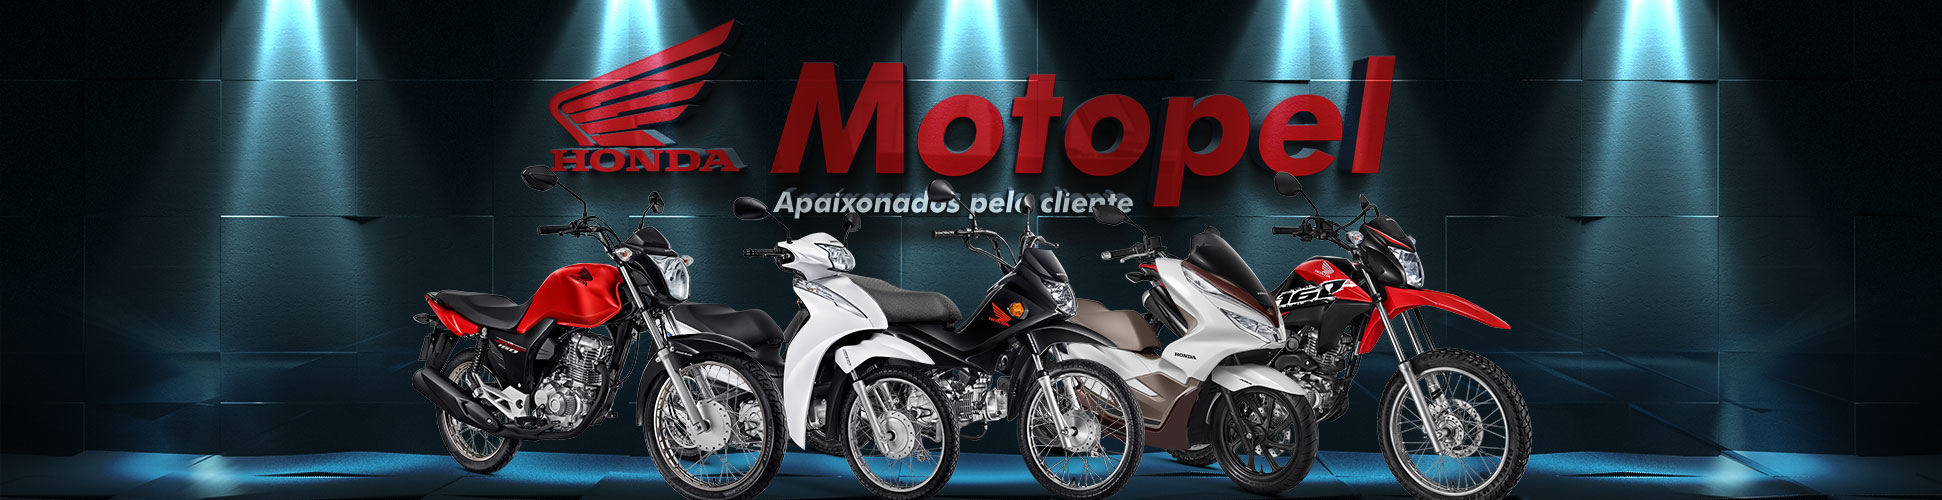 Motos Honda Motopel. Quer comprar sua moto Honda zero?